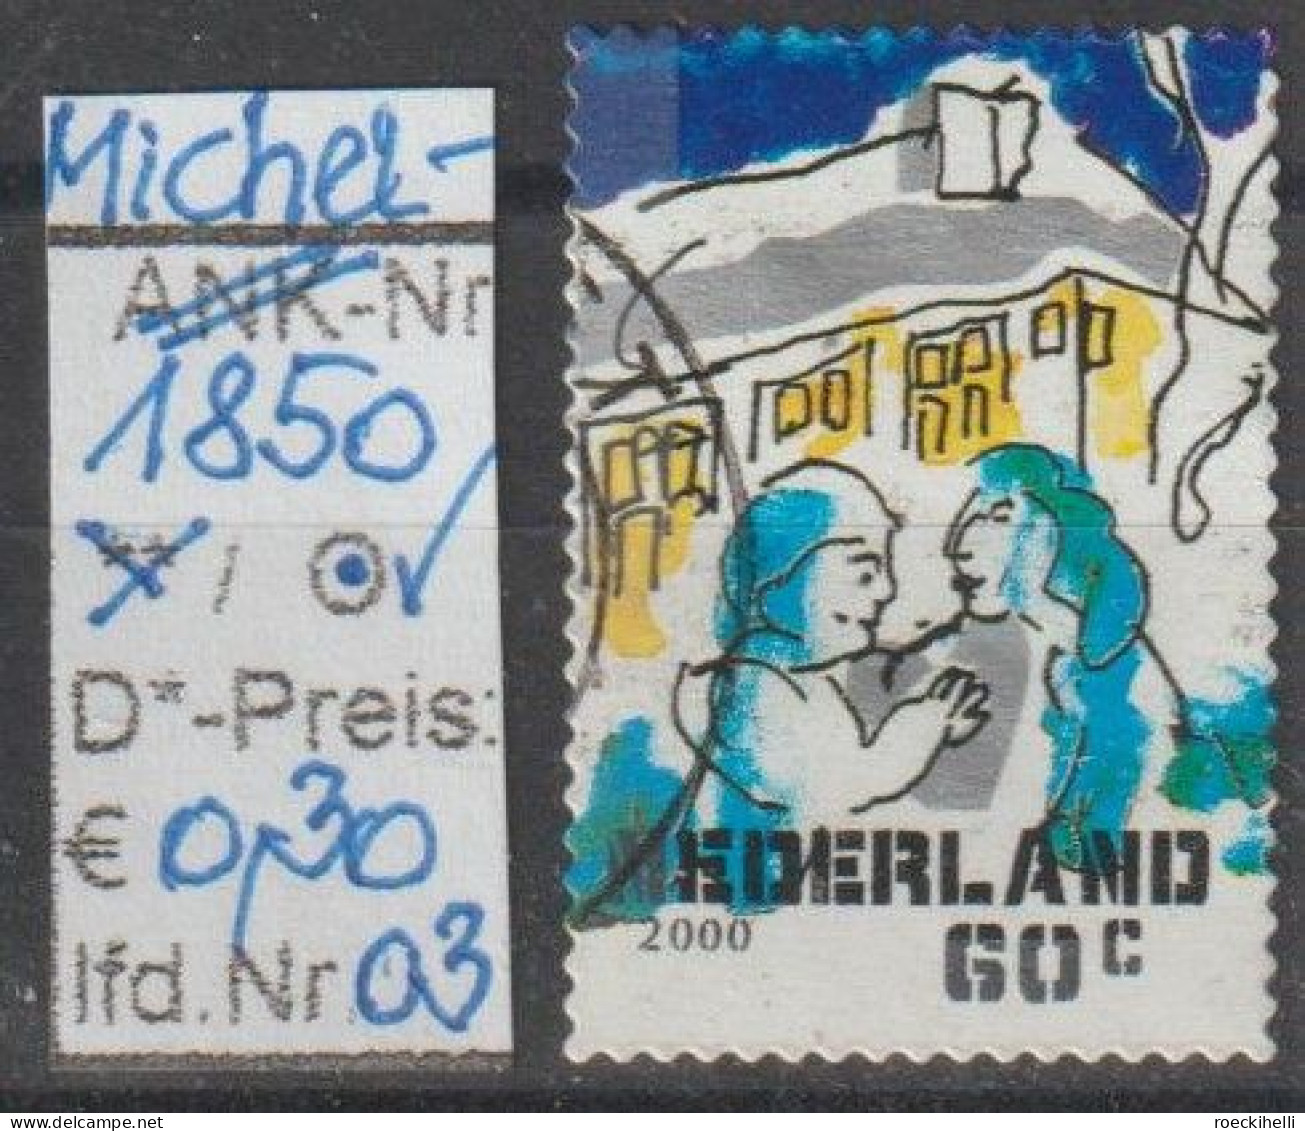 2000 - NIEDERLANDE - FM/DM "Dez.marken-Paar Vor Haus" 60 C Mehrf. - S. Scan  (1850o 01-03 Nl) - Usados